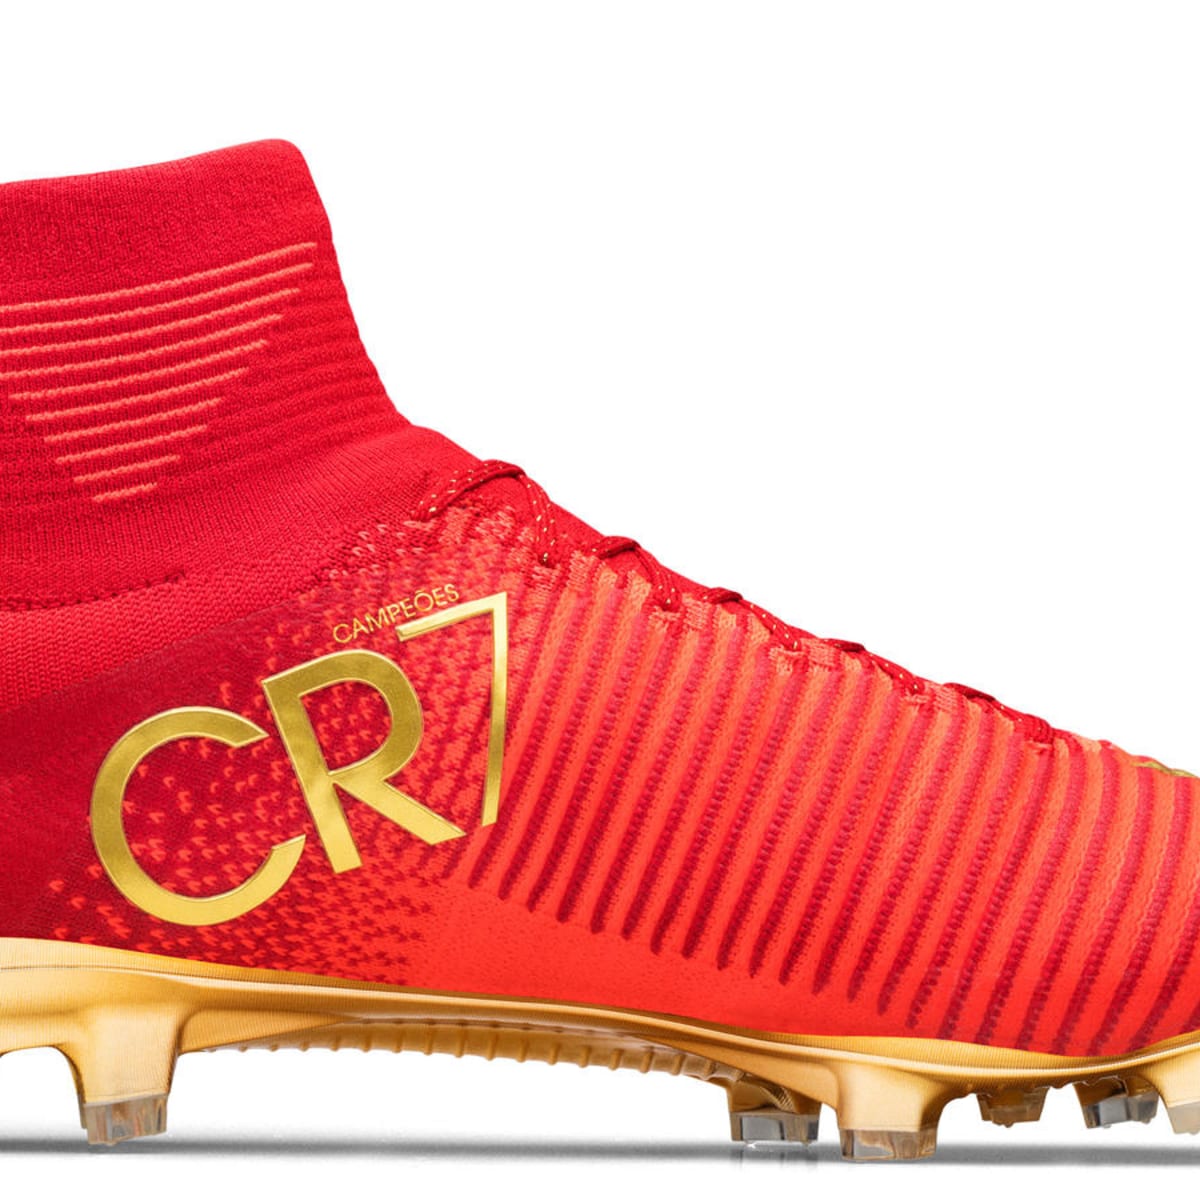 new cristiano ronaldo boots